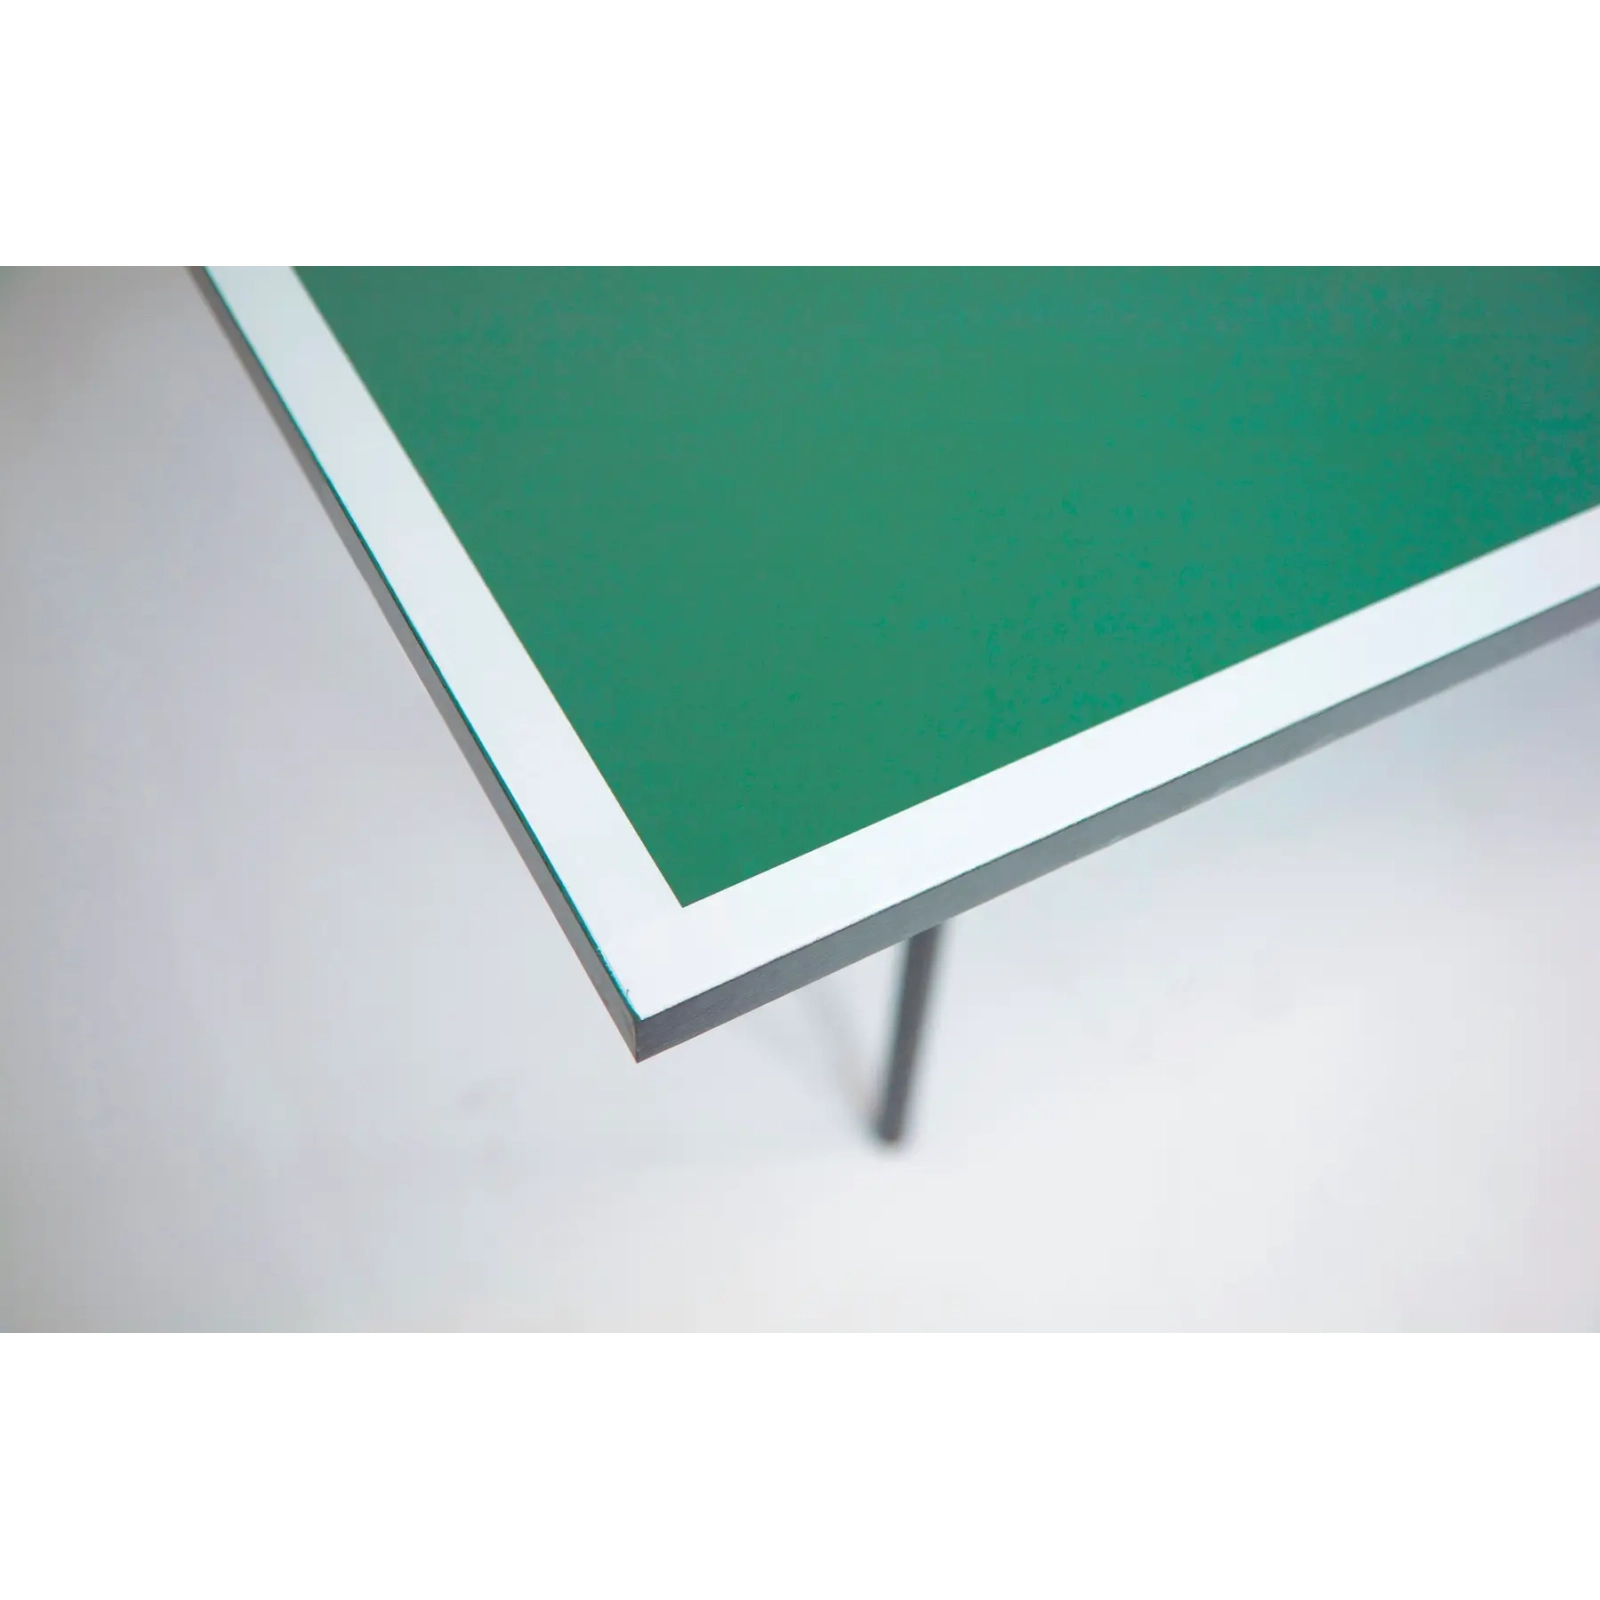 Теннисный стол Garlando Challenge Indoor 16 mm Green (C-272I) (930619) изображение 5